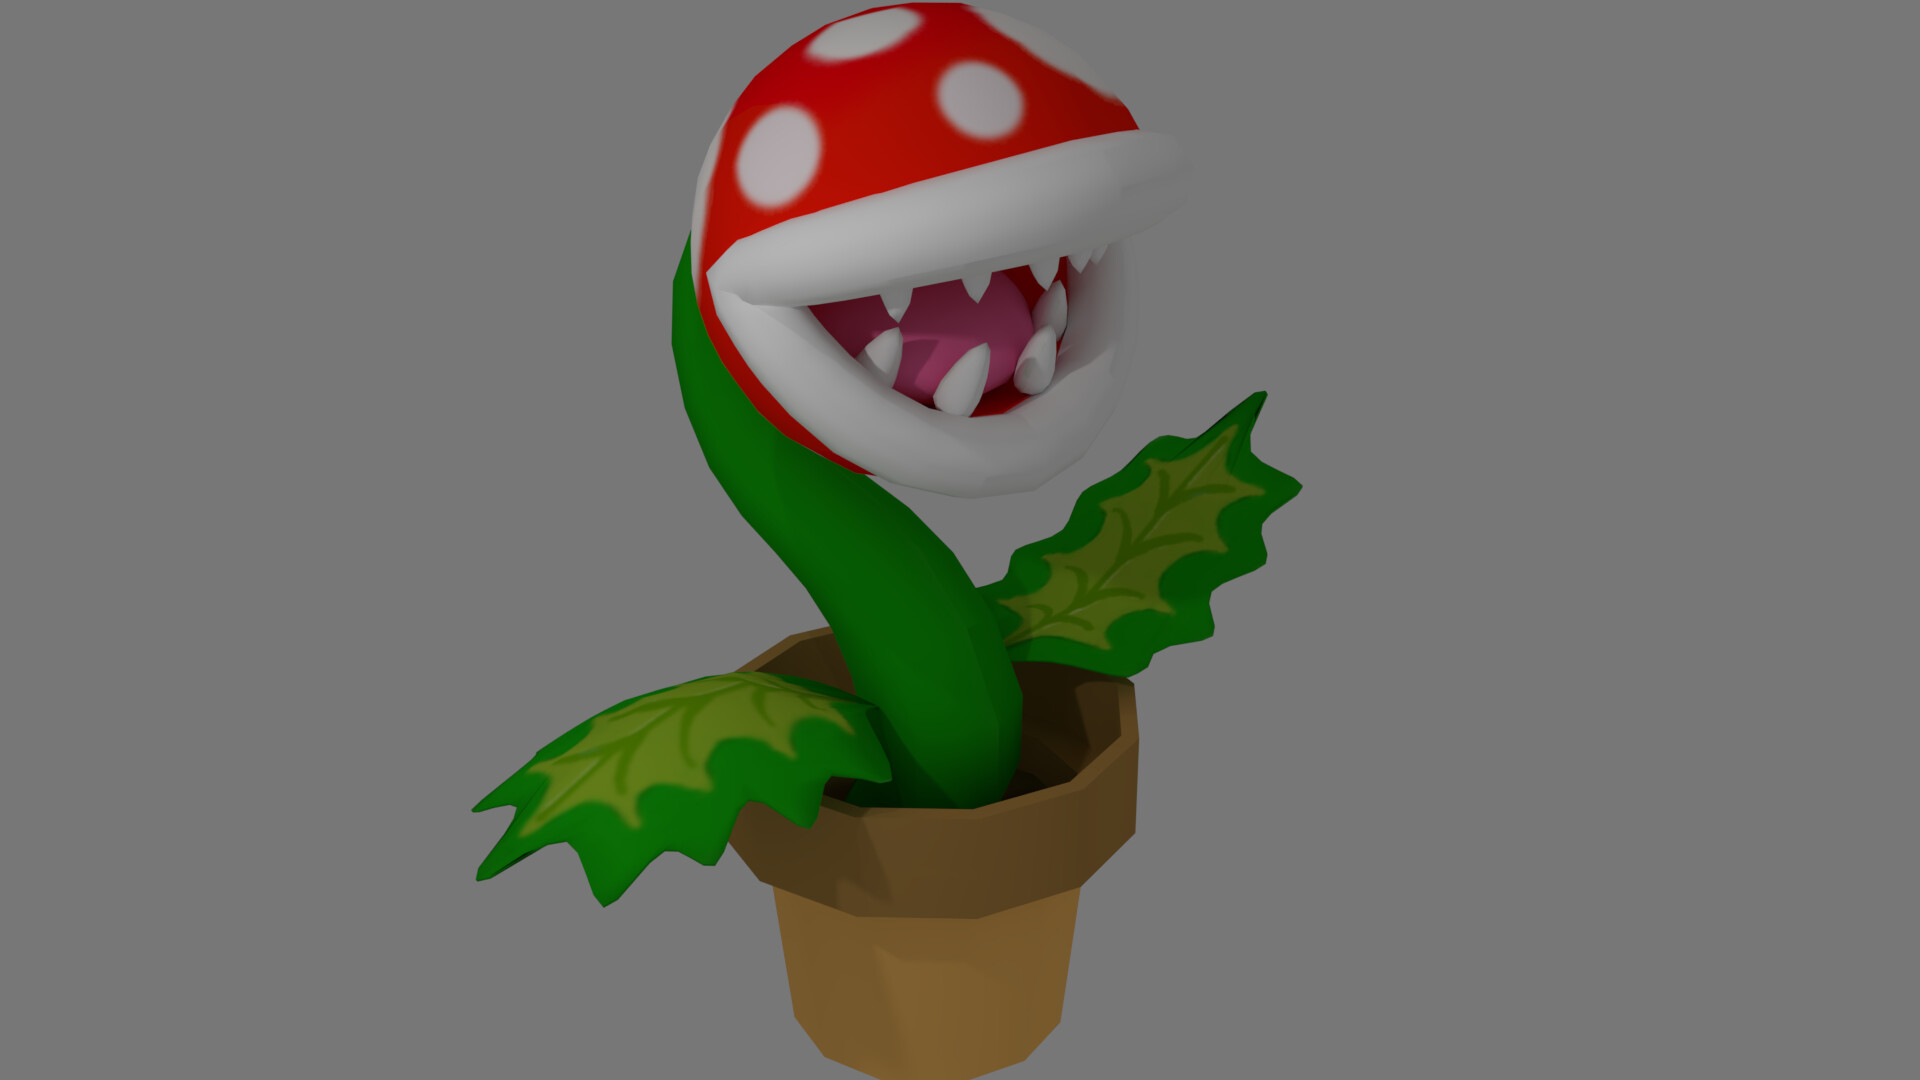 Super Mario - Piranha Plant.